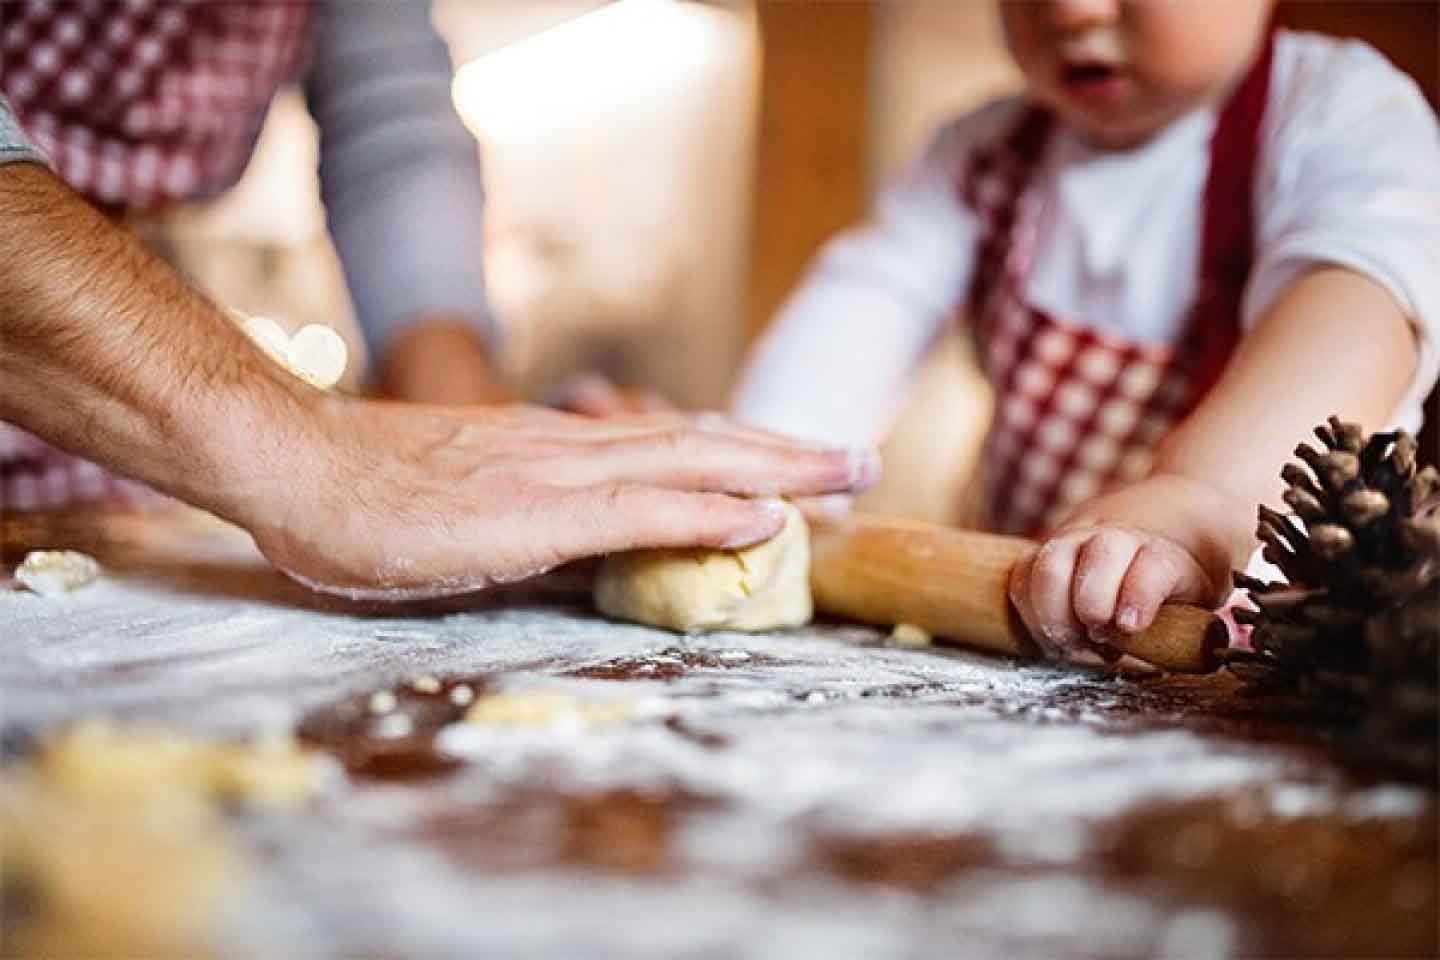 Un consiglio per i vostri biscotti: insieme dietro ai fornelli, o meglio al forno, è più divertente! Un bambino impegnato a stendere l'impasto.